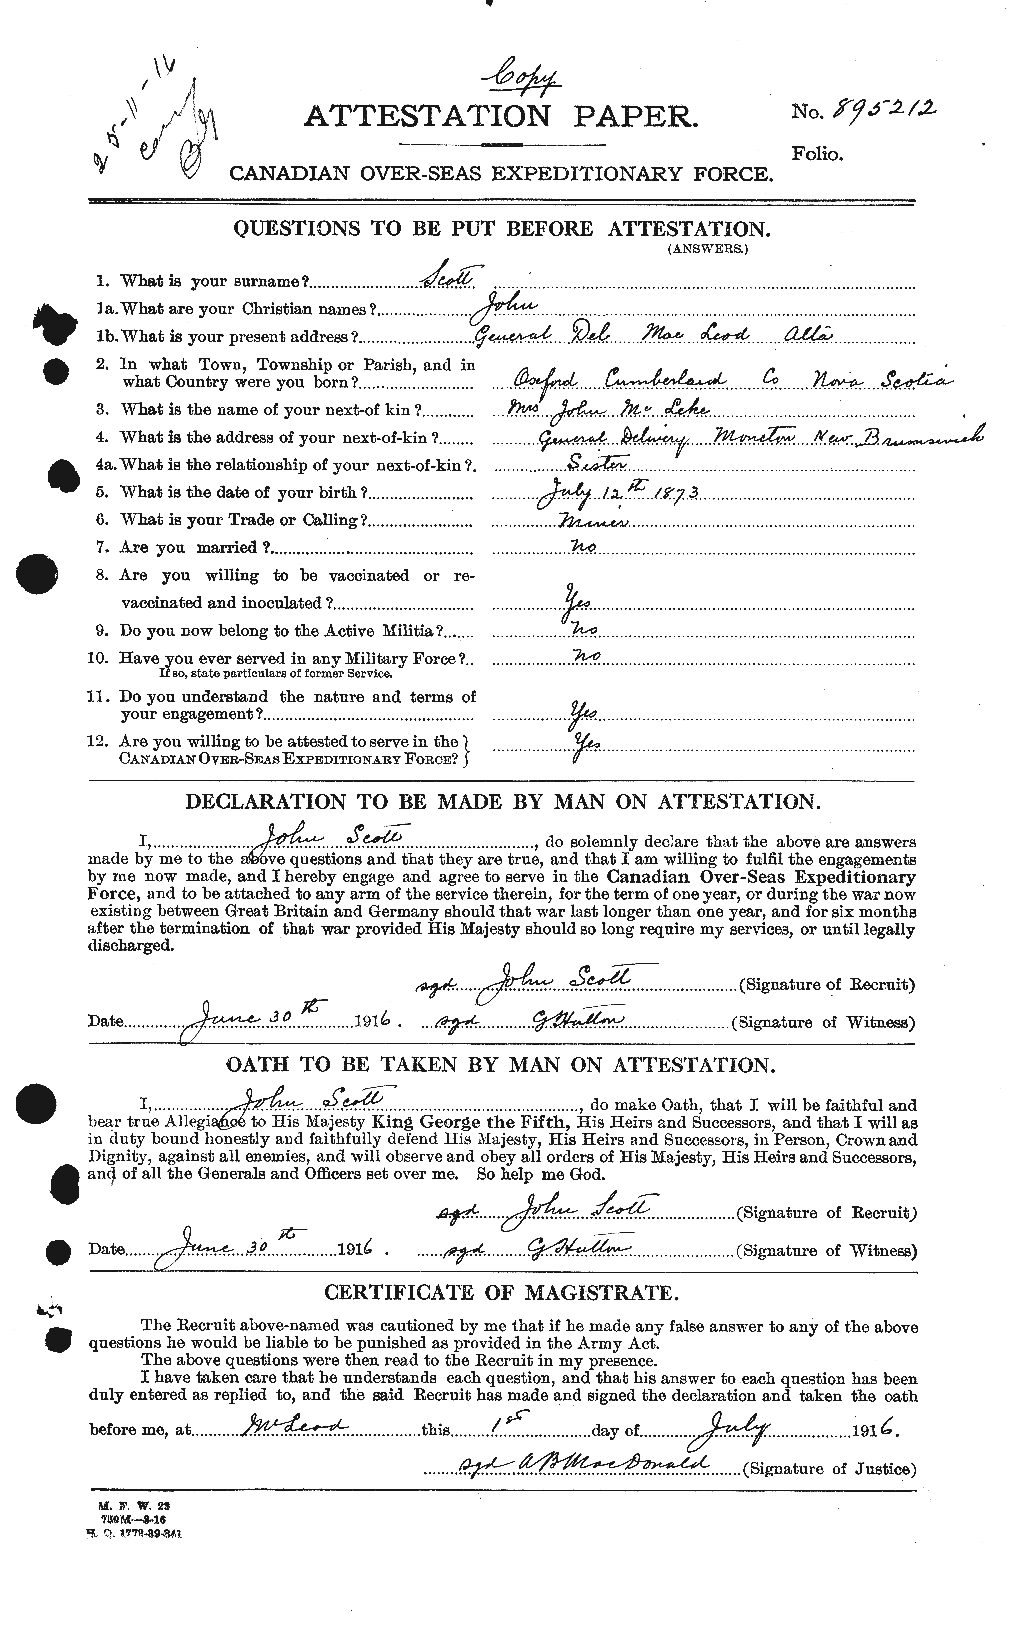 Dossiers du Personnel de la Première Guerre mondiale - CEC 084893a